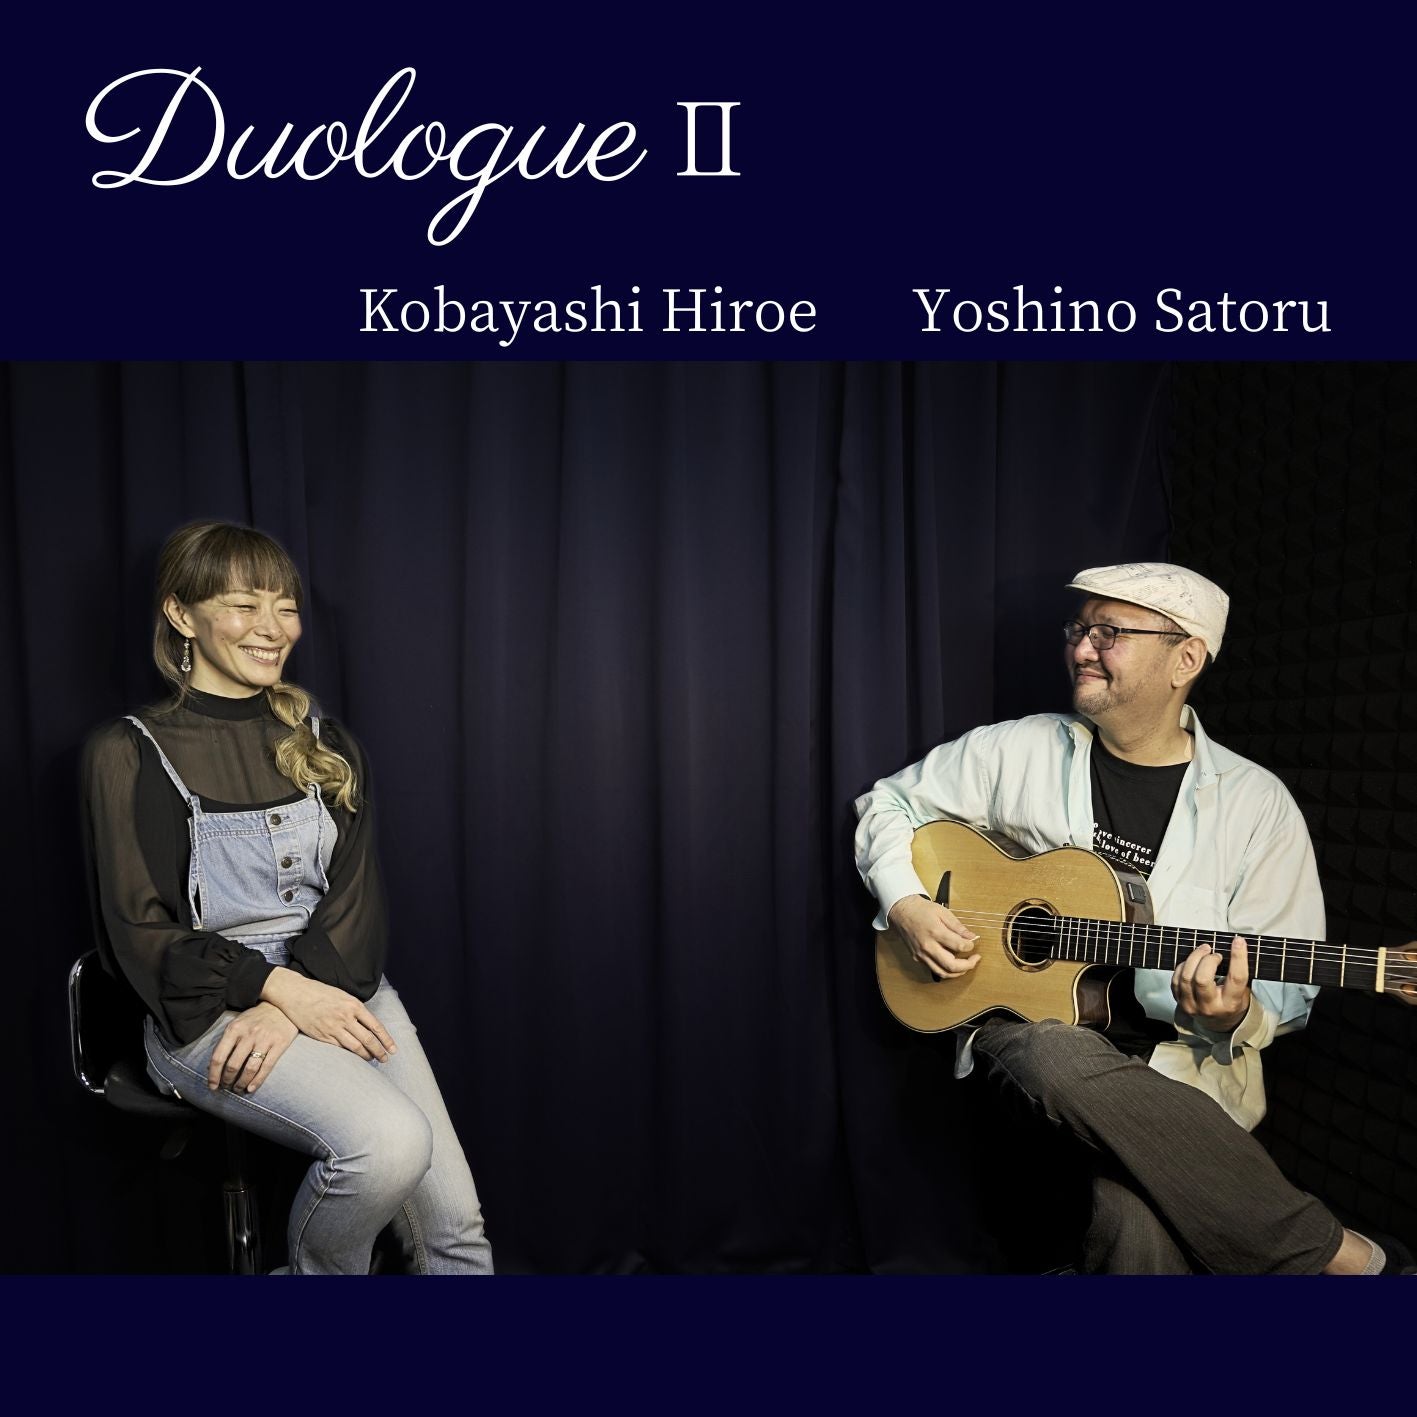 Yoshino Satoru - Hiroe Kobayashi “Duologue Ⅱ”